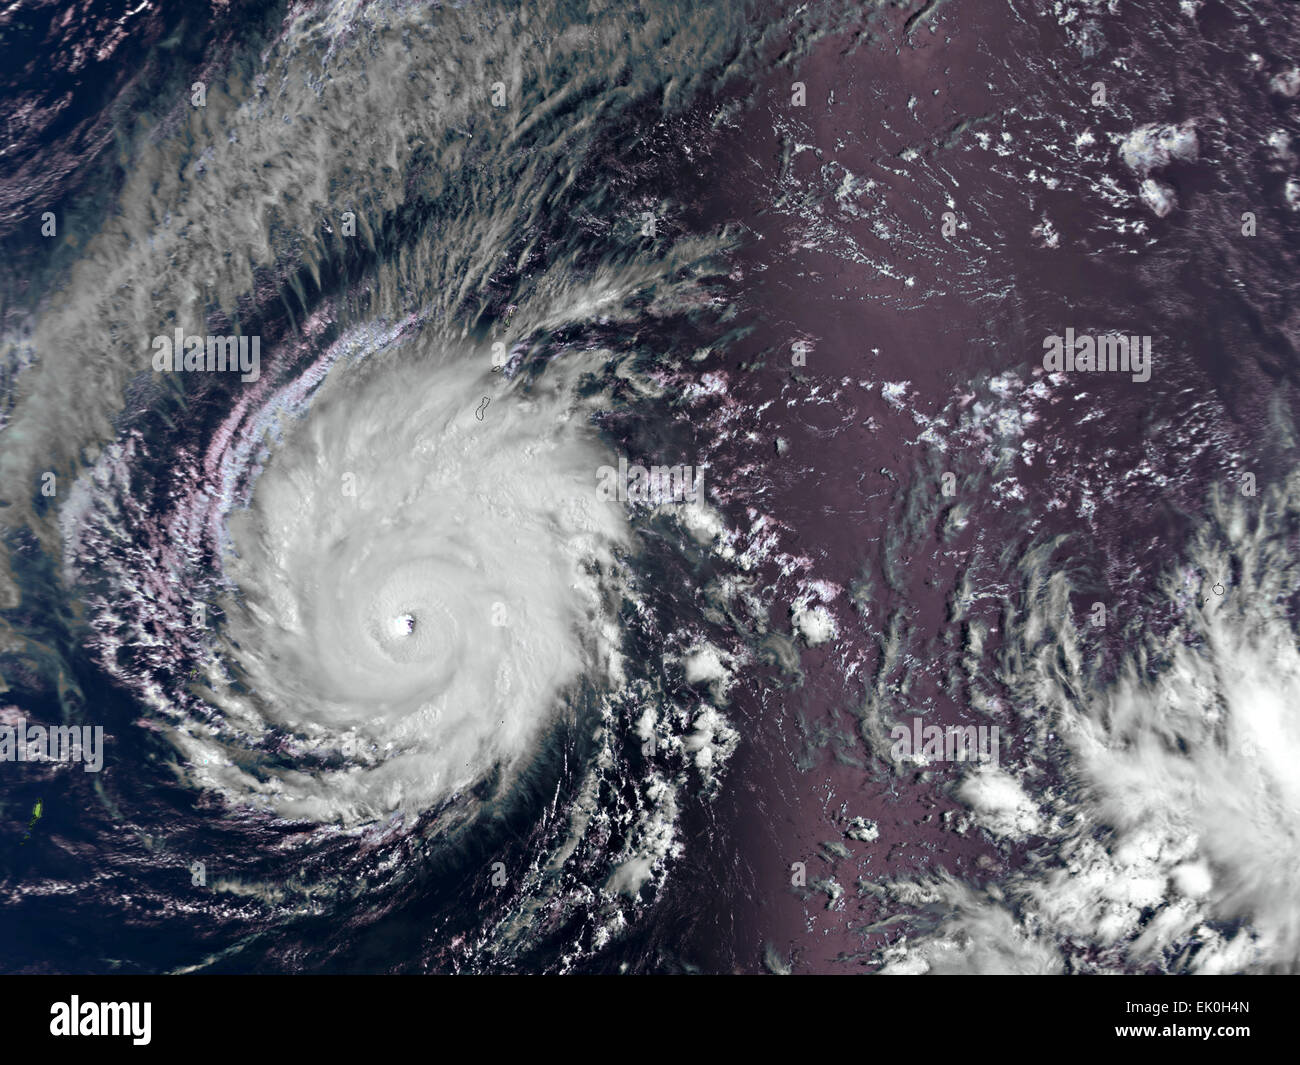 Vista de la masiva Maysak tifón categoría 5 cuando se aproxima a las Islas Filipinas el 30 de marzo de 2015 capturado por el instrumento AVHRR a bordo del EUMETSAT Metop-B satélite de órbita polar. El super tifón se espera a la tierra en el próximo fin de semana de Pascua. Foto de stock